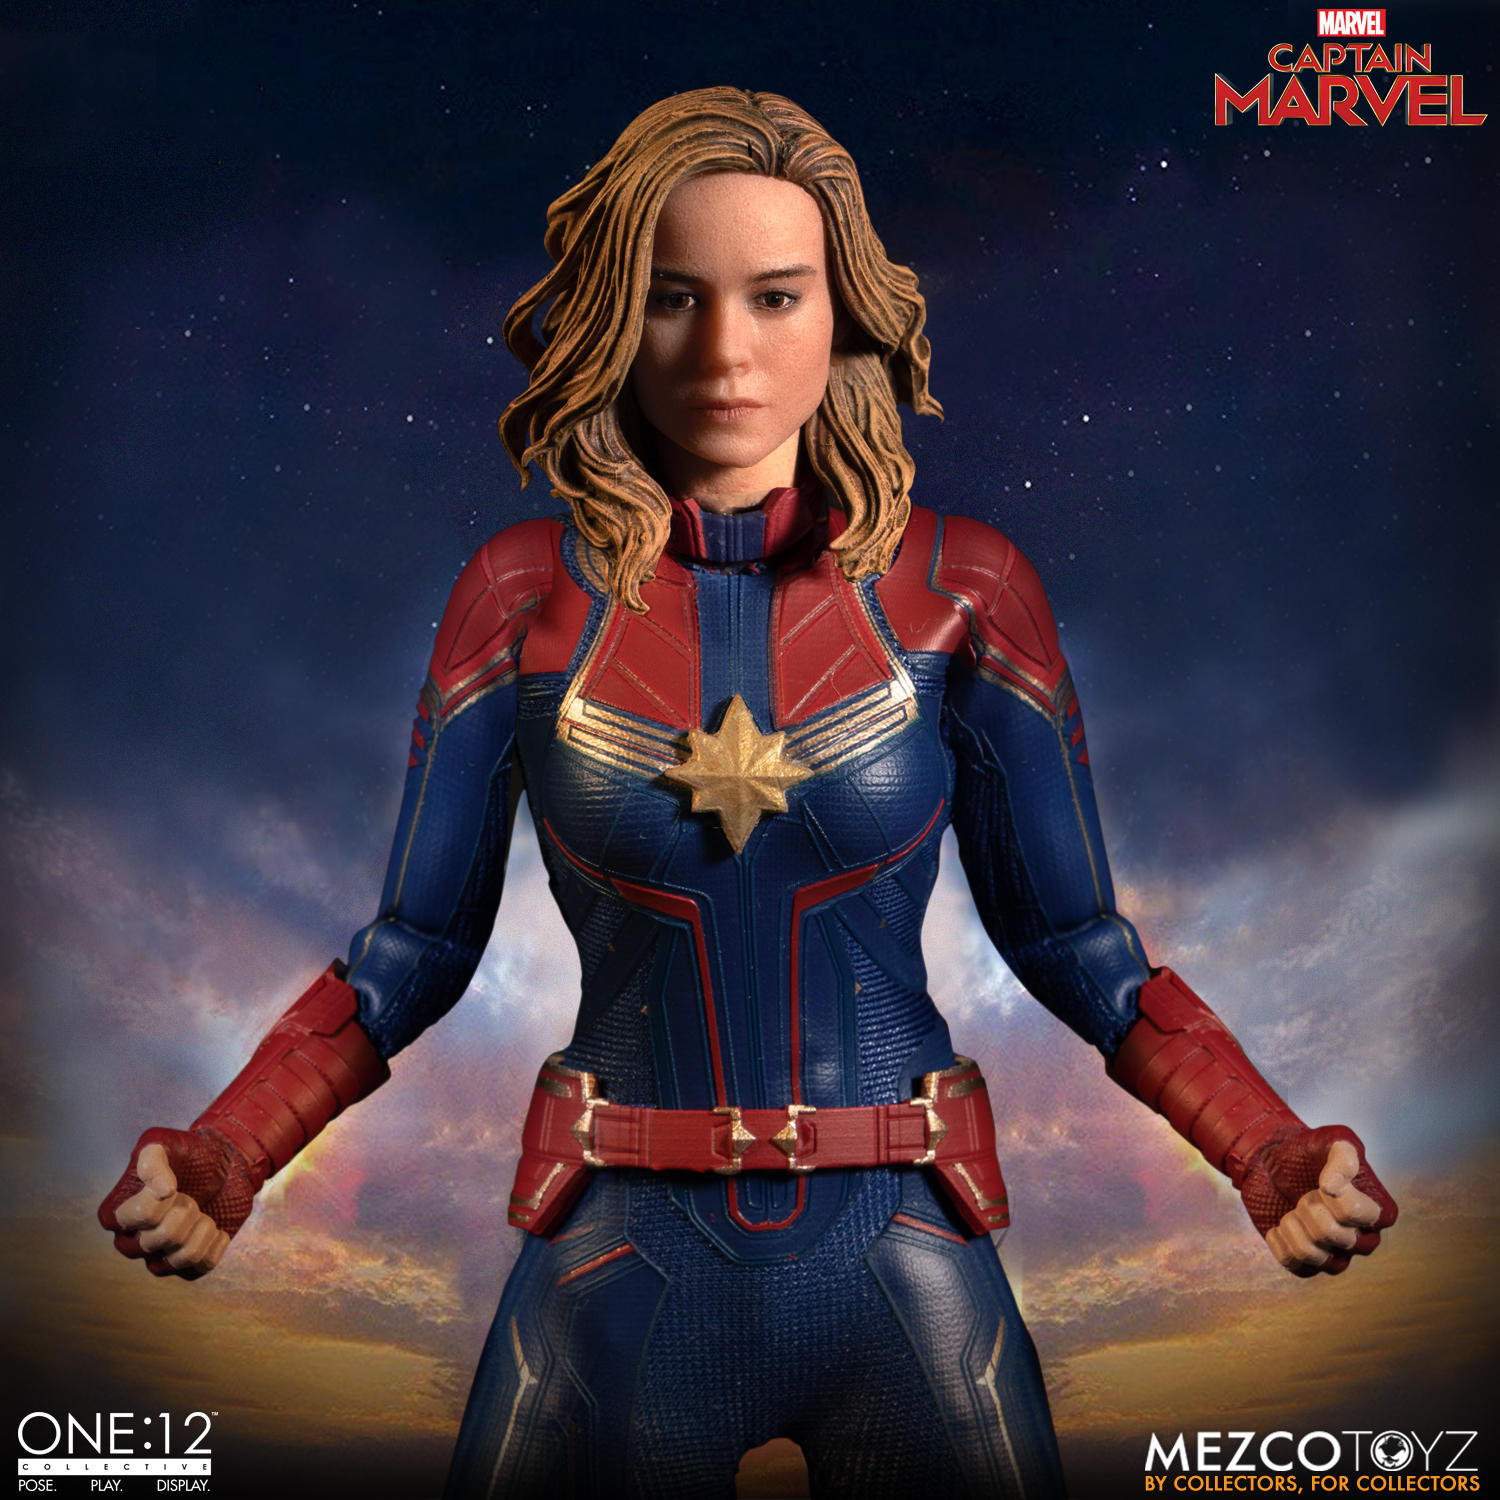 Mezco's One 12 Collective Captain Marvel Action Figure